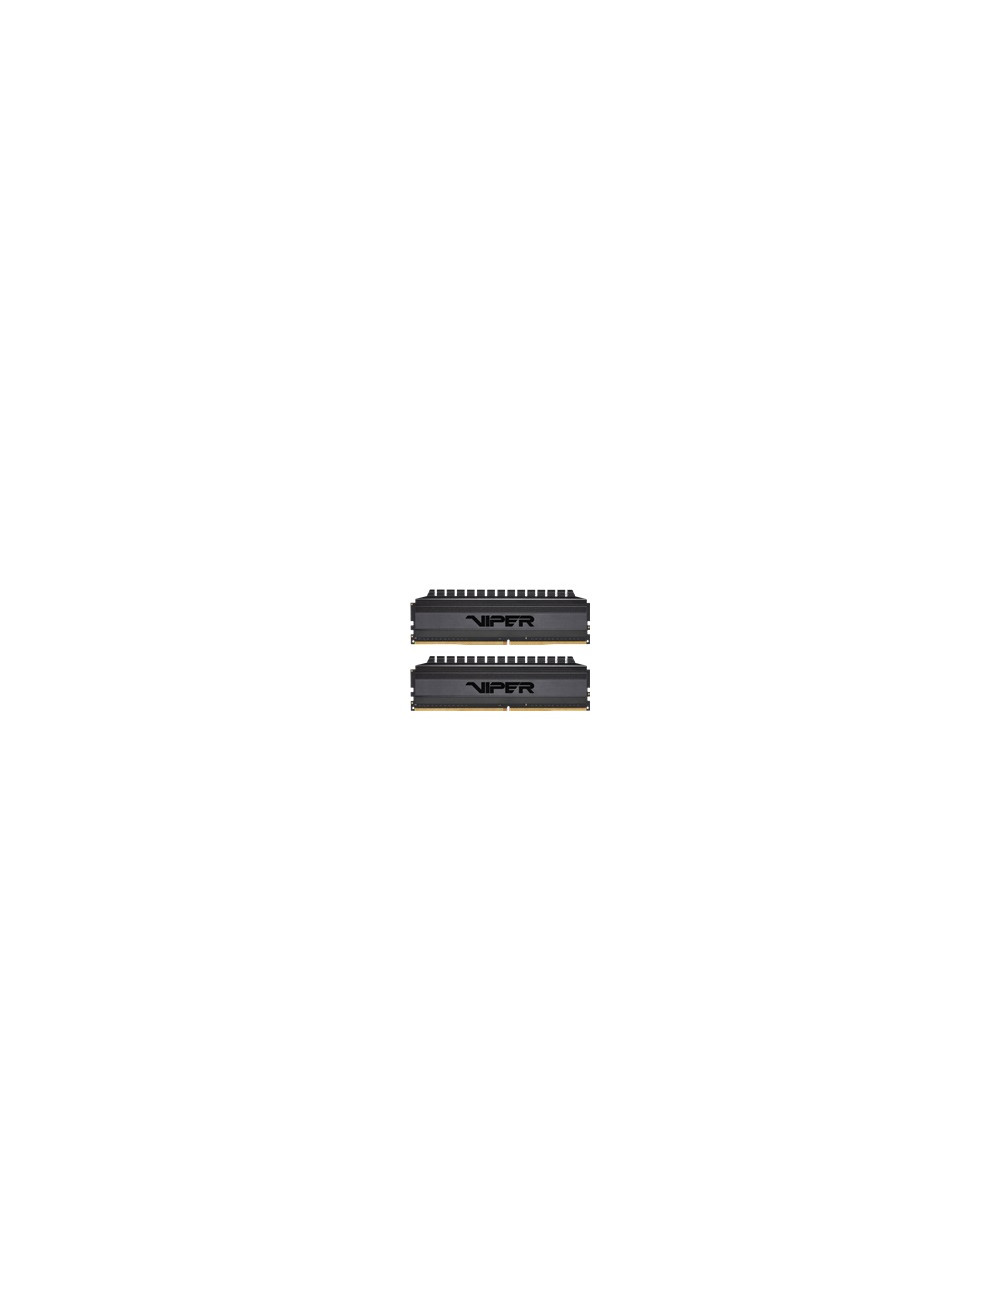 PATRIOT Viper 4 Blackout 32GB 2x16GB